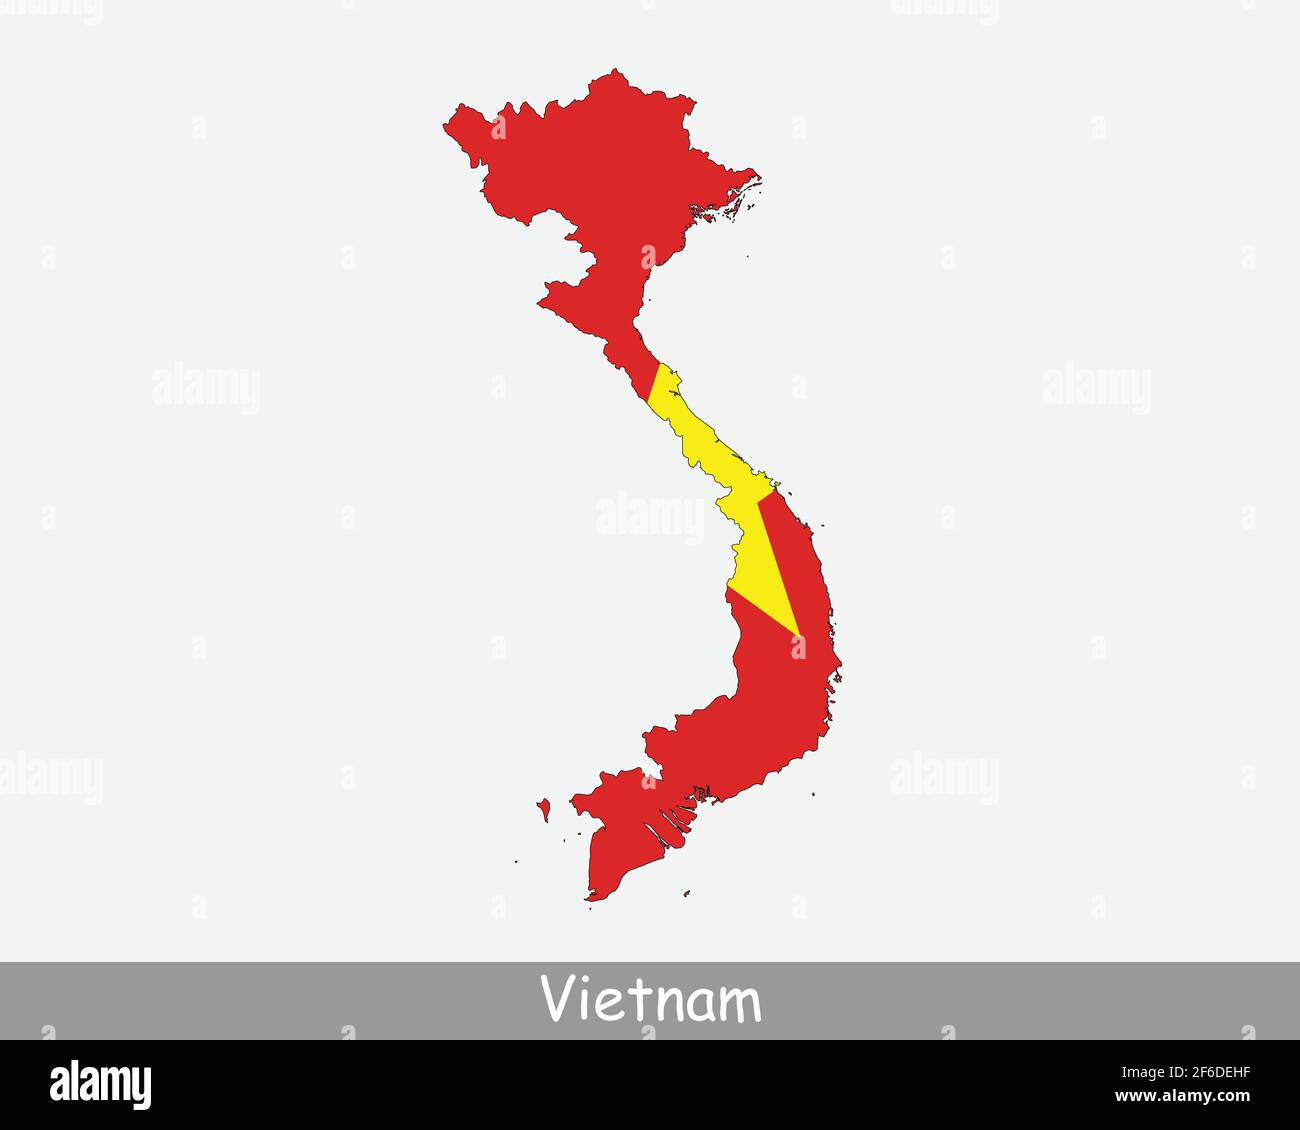 Karte Mit Vietnam-Flagge. Karte der Sozialistischen Republik Vietnam mit der vietnamesischen Nationalflagge isoliert auf weißem Hintergrund. Vektorgrafik Stock Vektor